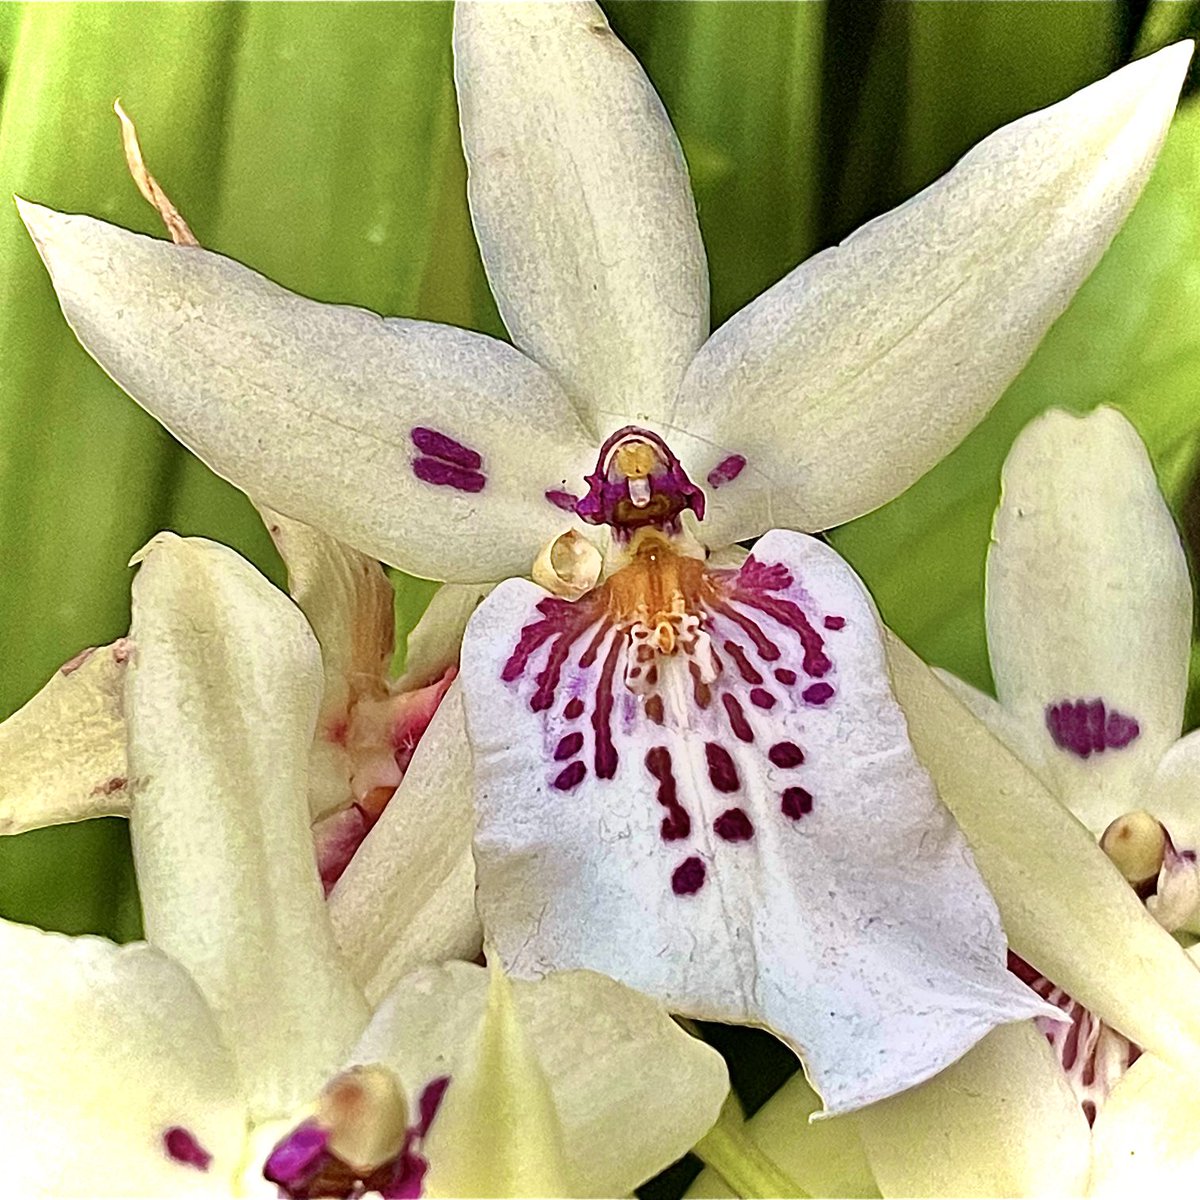 Winter Orchid #winter #orchid #flower #bloom #beauty #garden #botanical #capitalhill